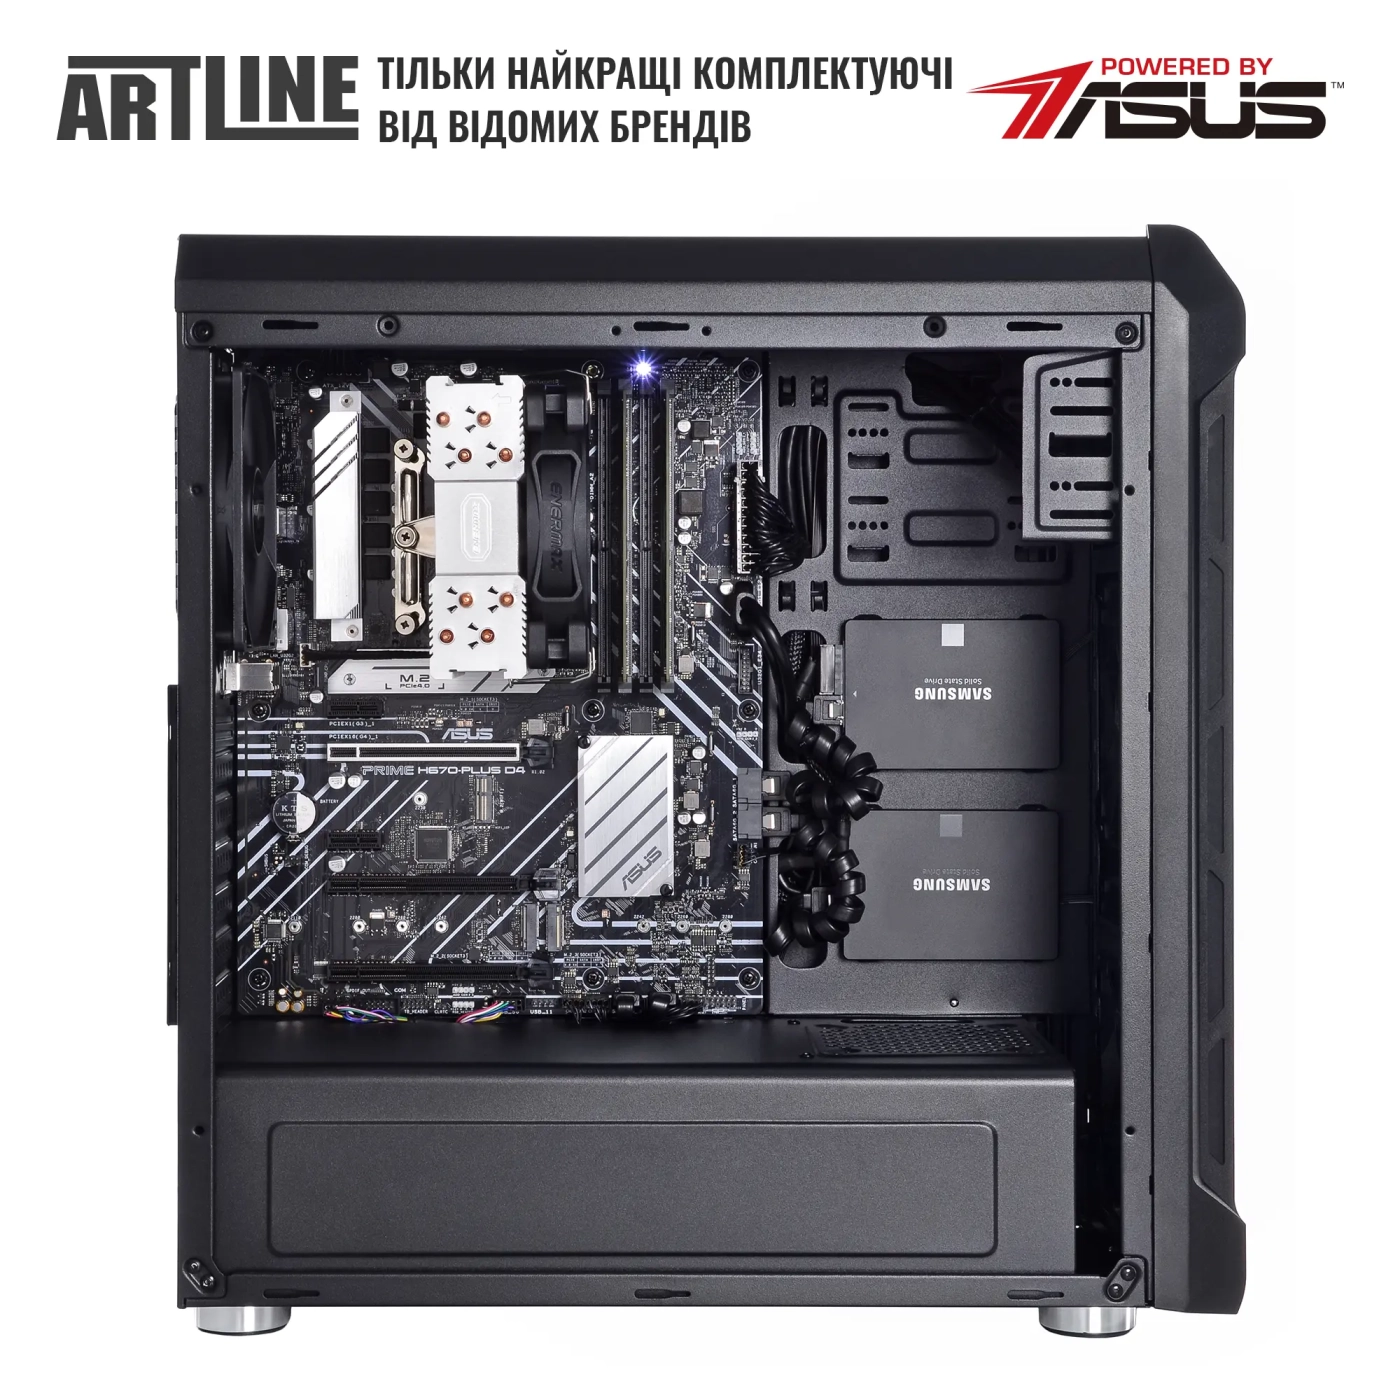 Купить Сервер ARTLINE Business T27 (T27v35) - фото 4